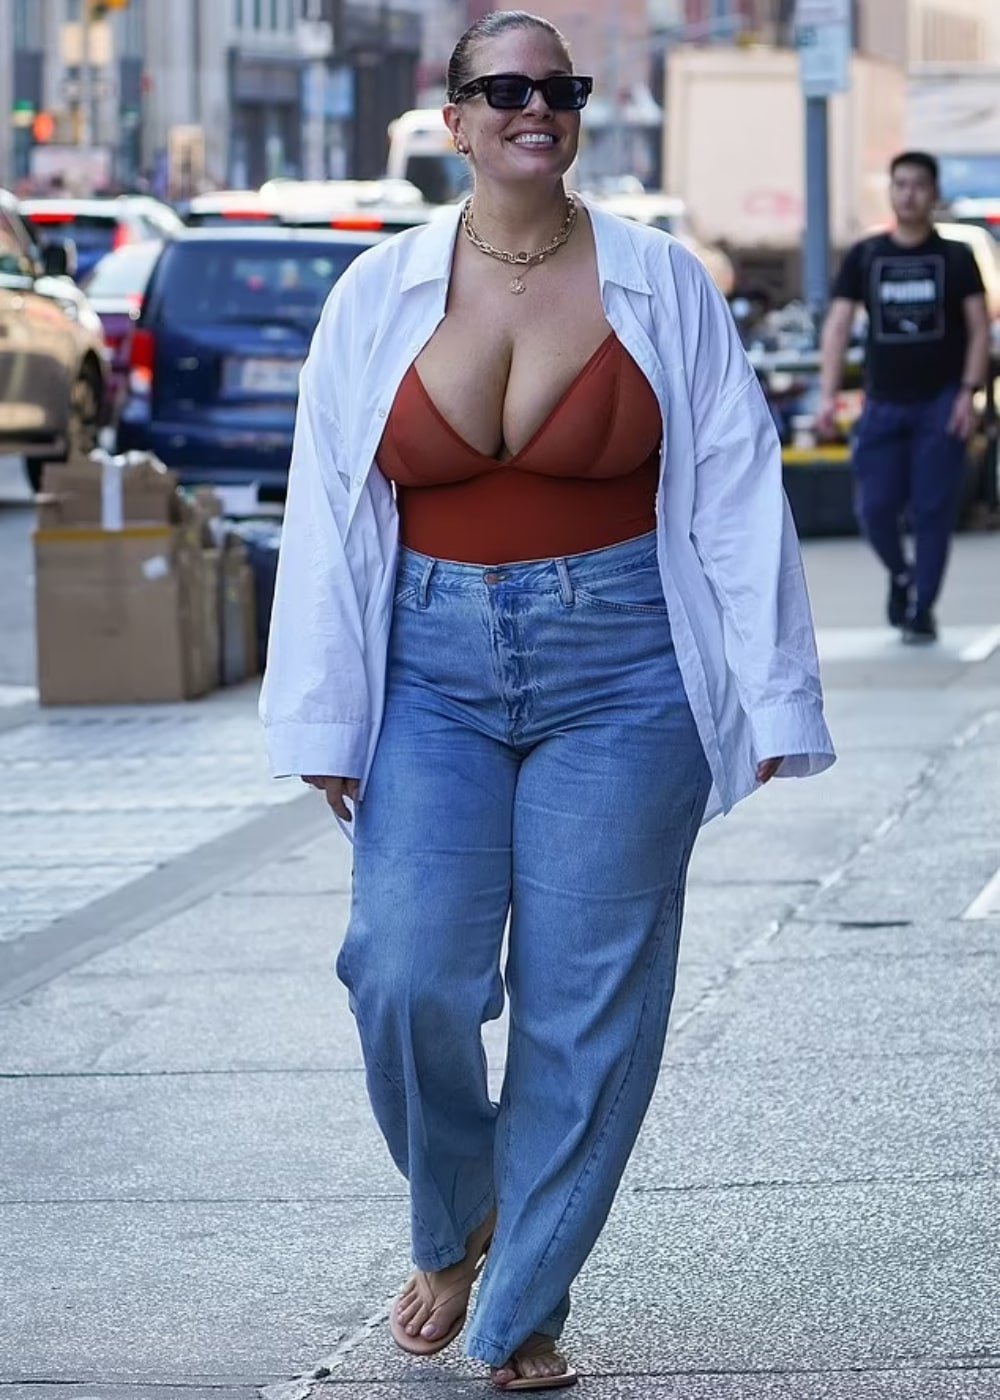 Ashley Graham - calça jeans, body e camisa branca - model off duty - Primavera - andando na rua usando óculos de sol - https://stealthelook.com.br